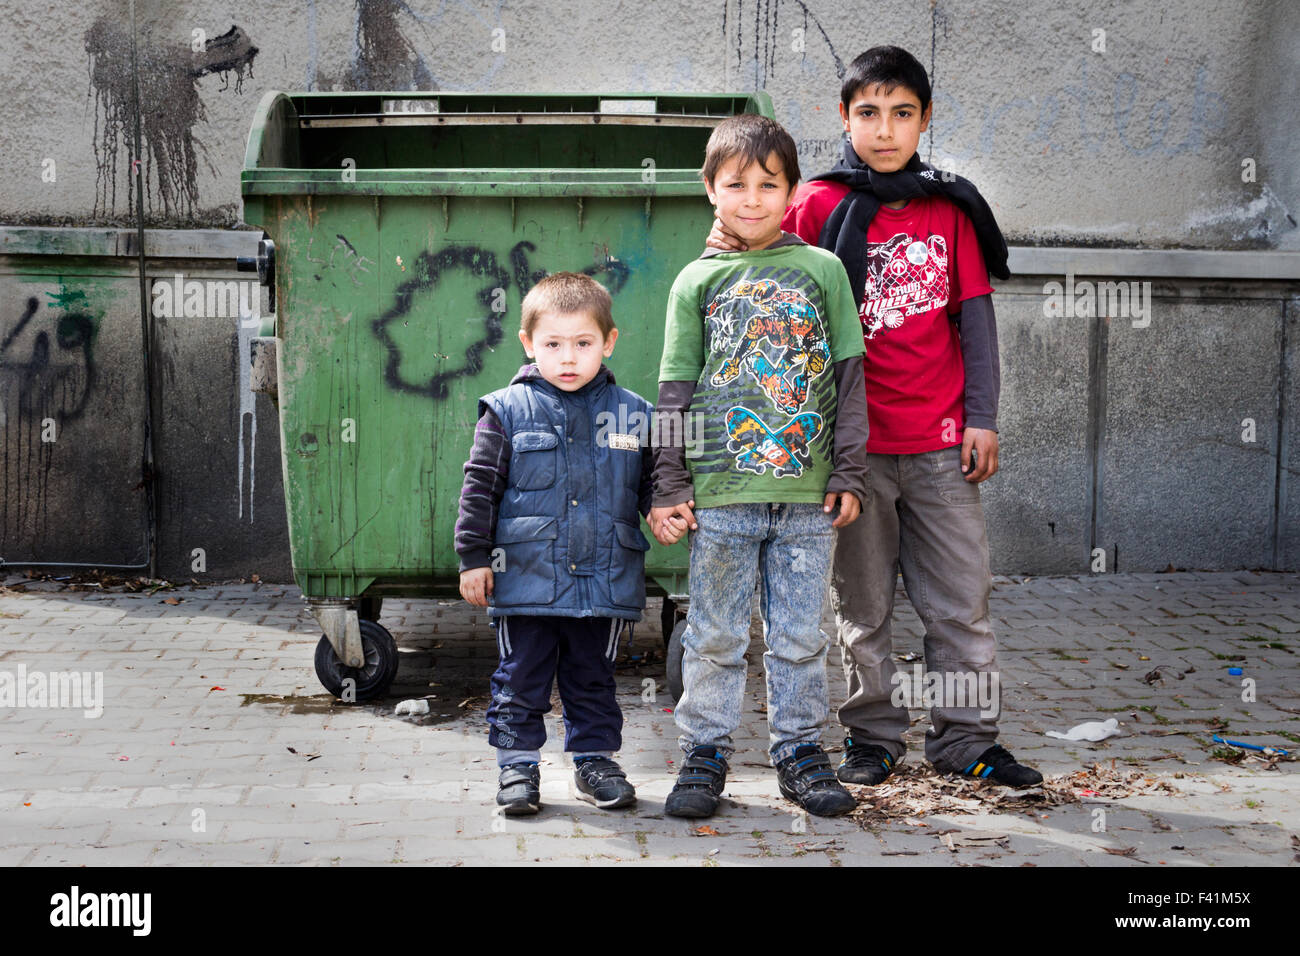 Drei Zigeuner (Roma) jungen stehen vor einem Müllcontainer. Stockfoto